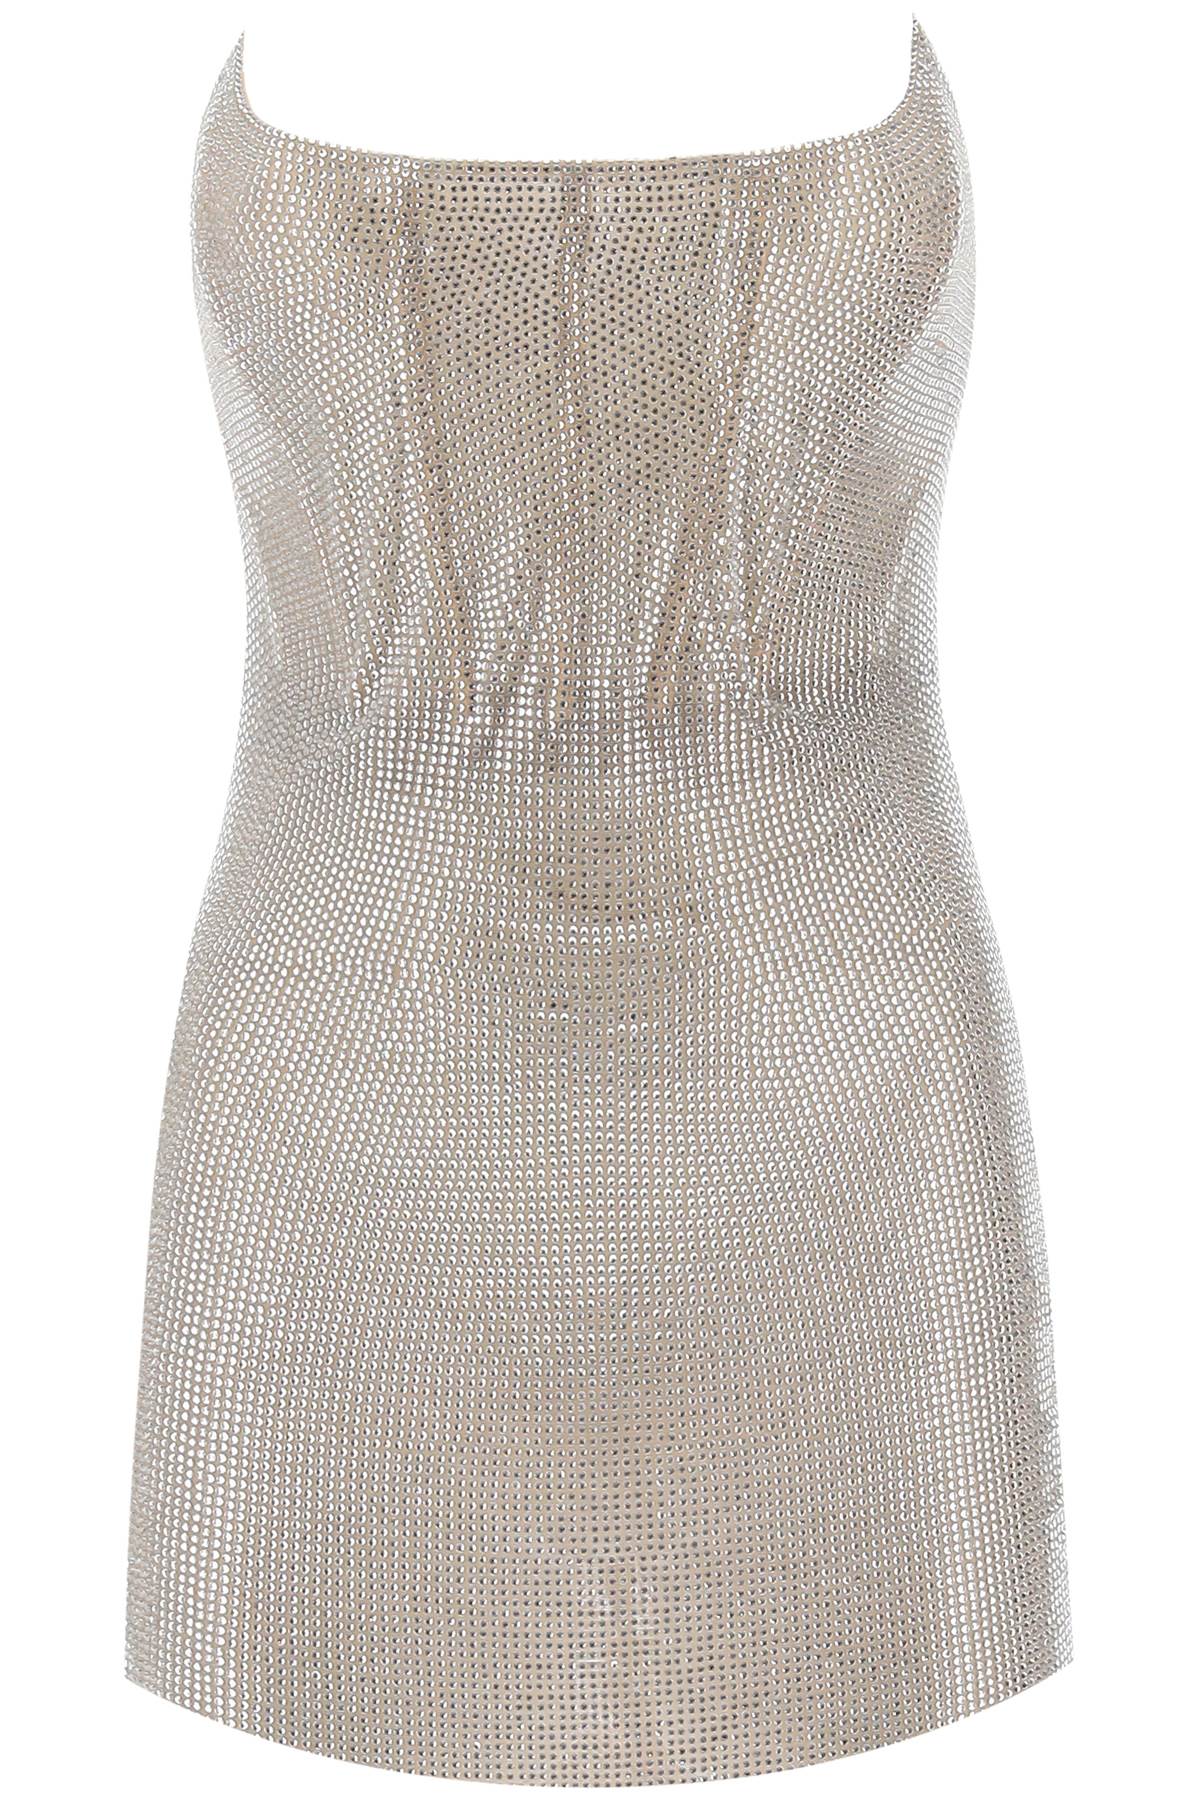 Váy Mini Đầy Lôi Cuốn với hoạ tiết đá quý của GIUSEPPE DI MORABITO màu Beige